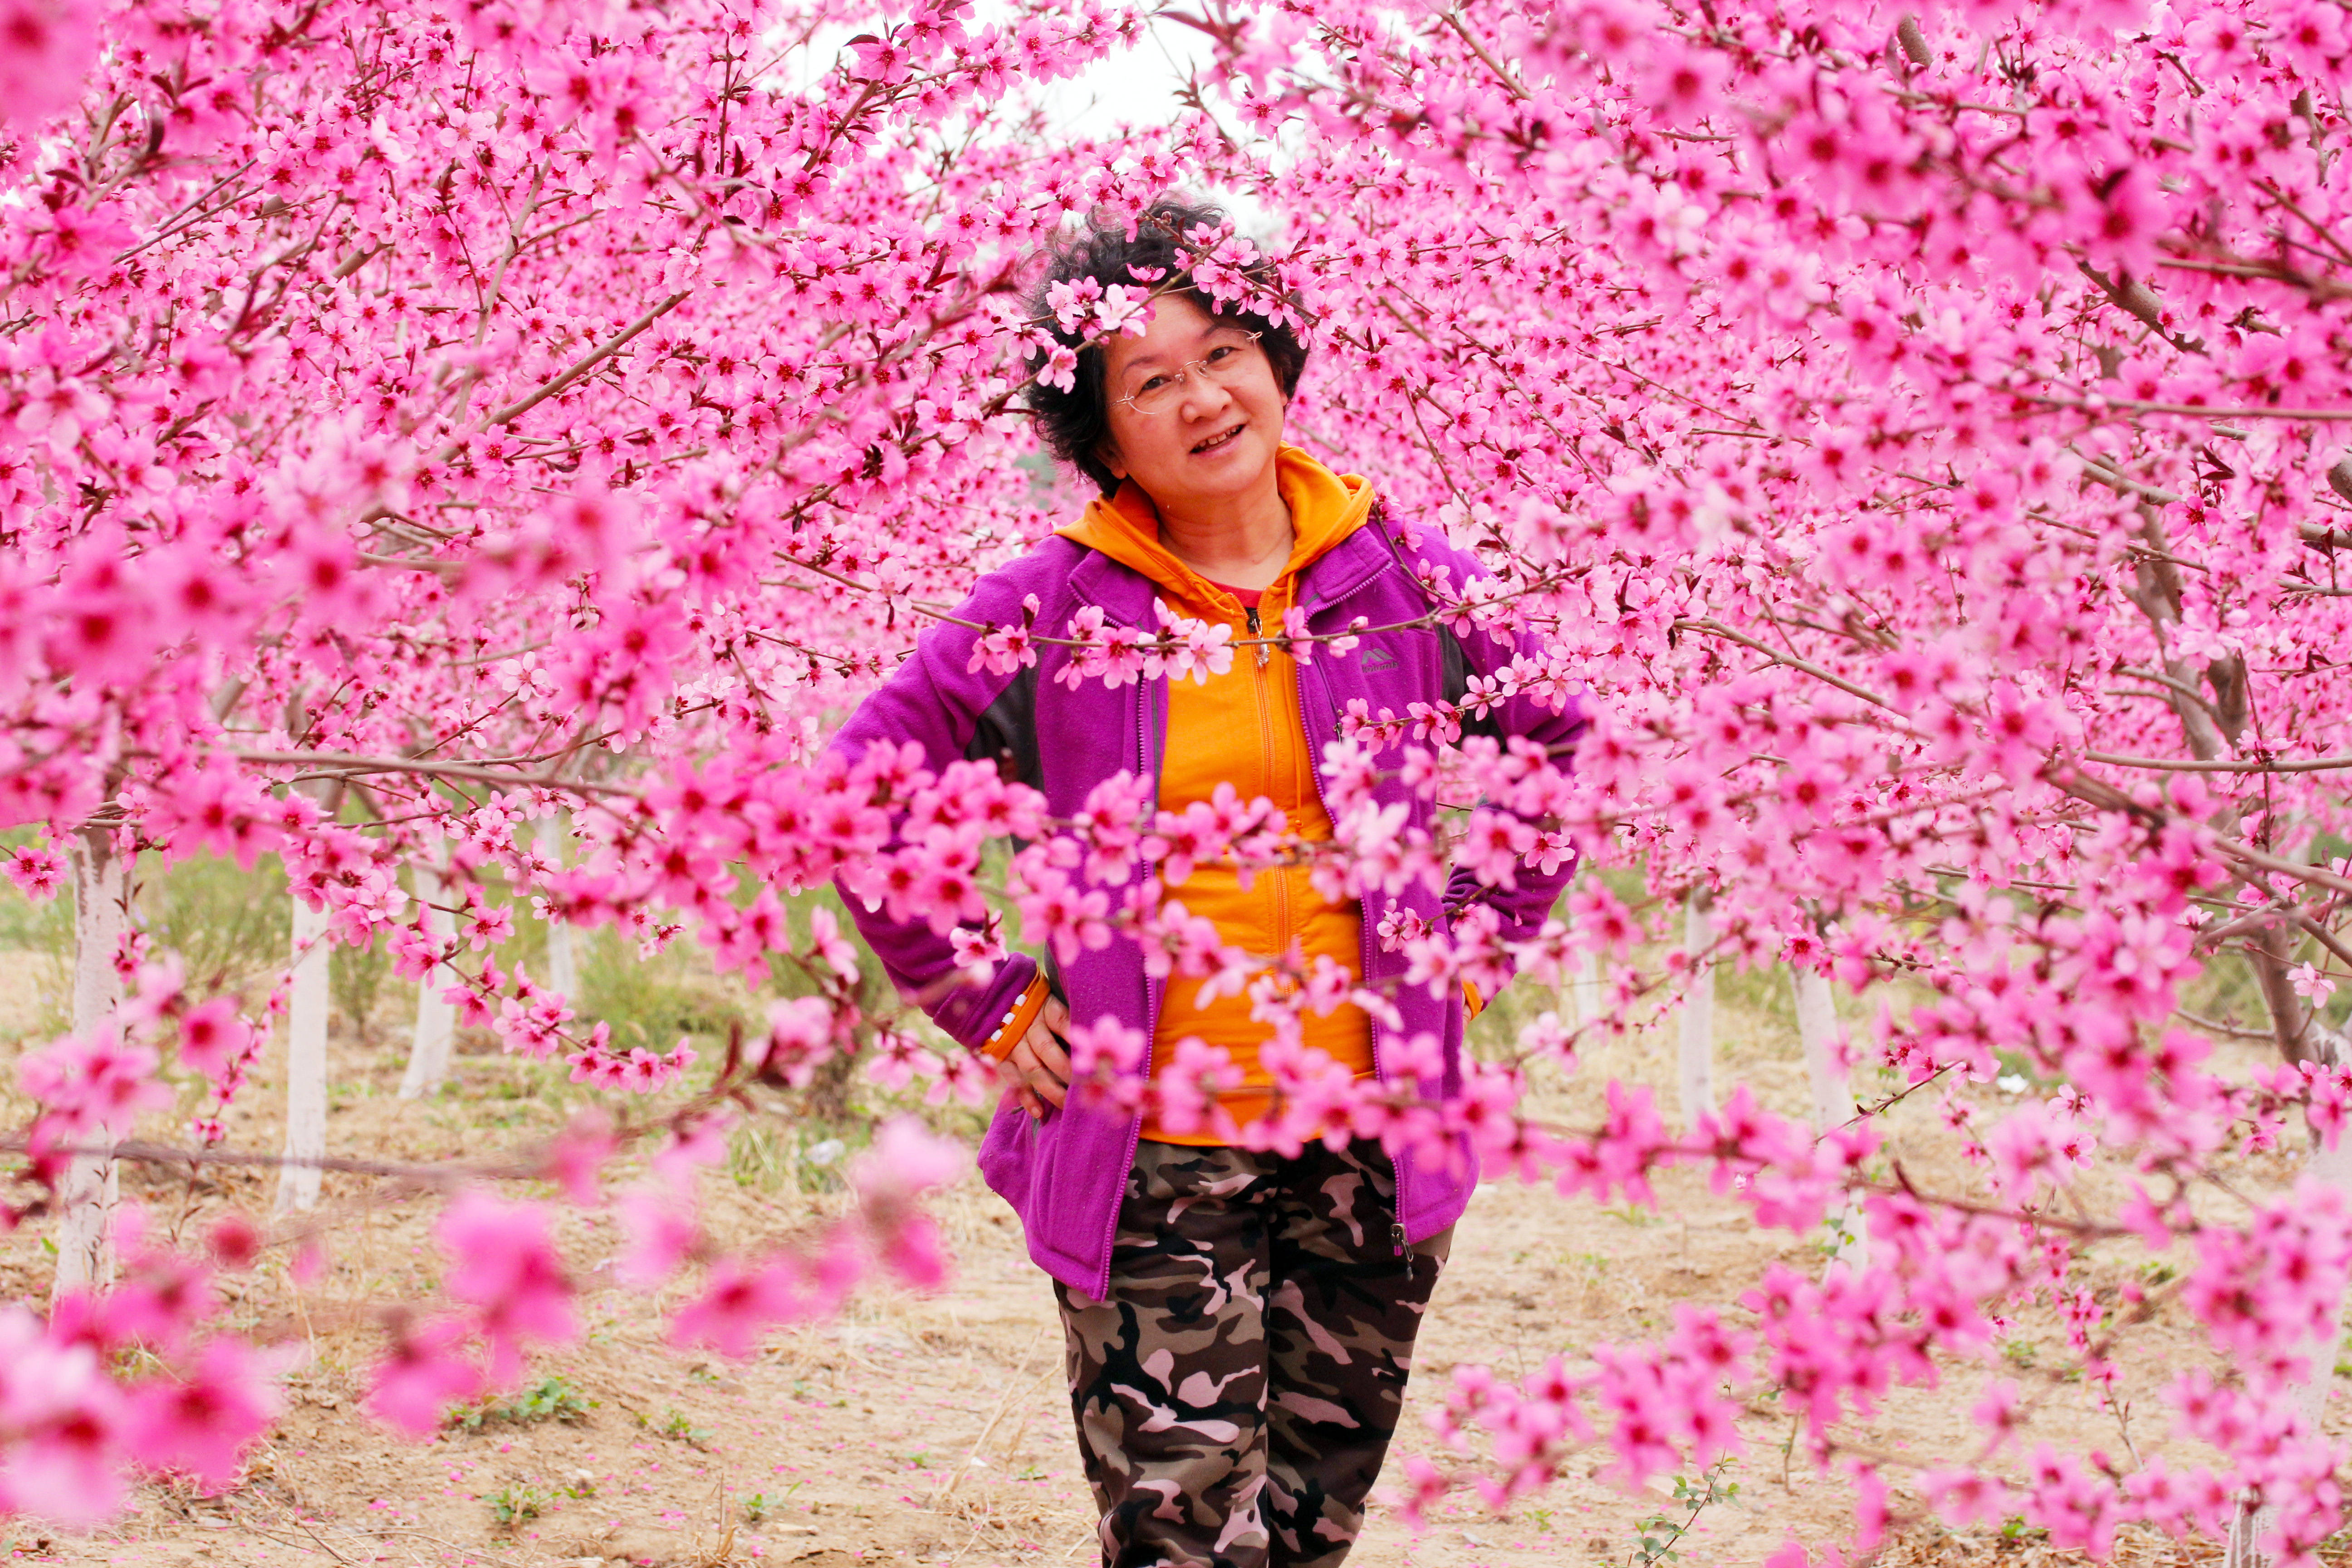 北京五环边有一片桃花源，空无一人似仙境，花开得比公园都美